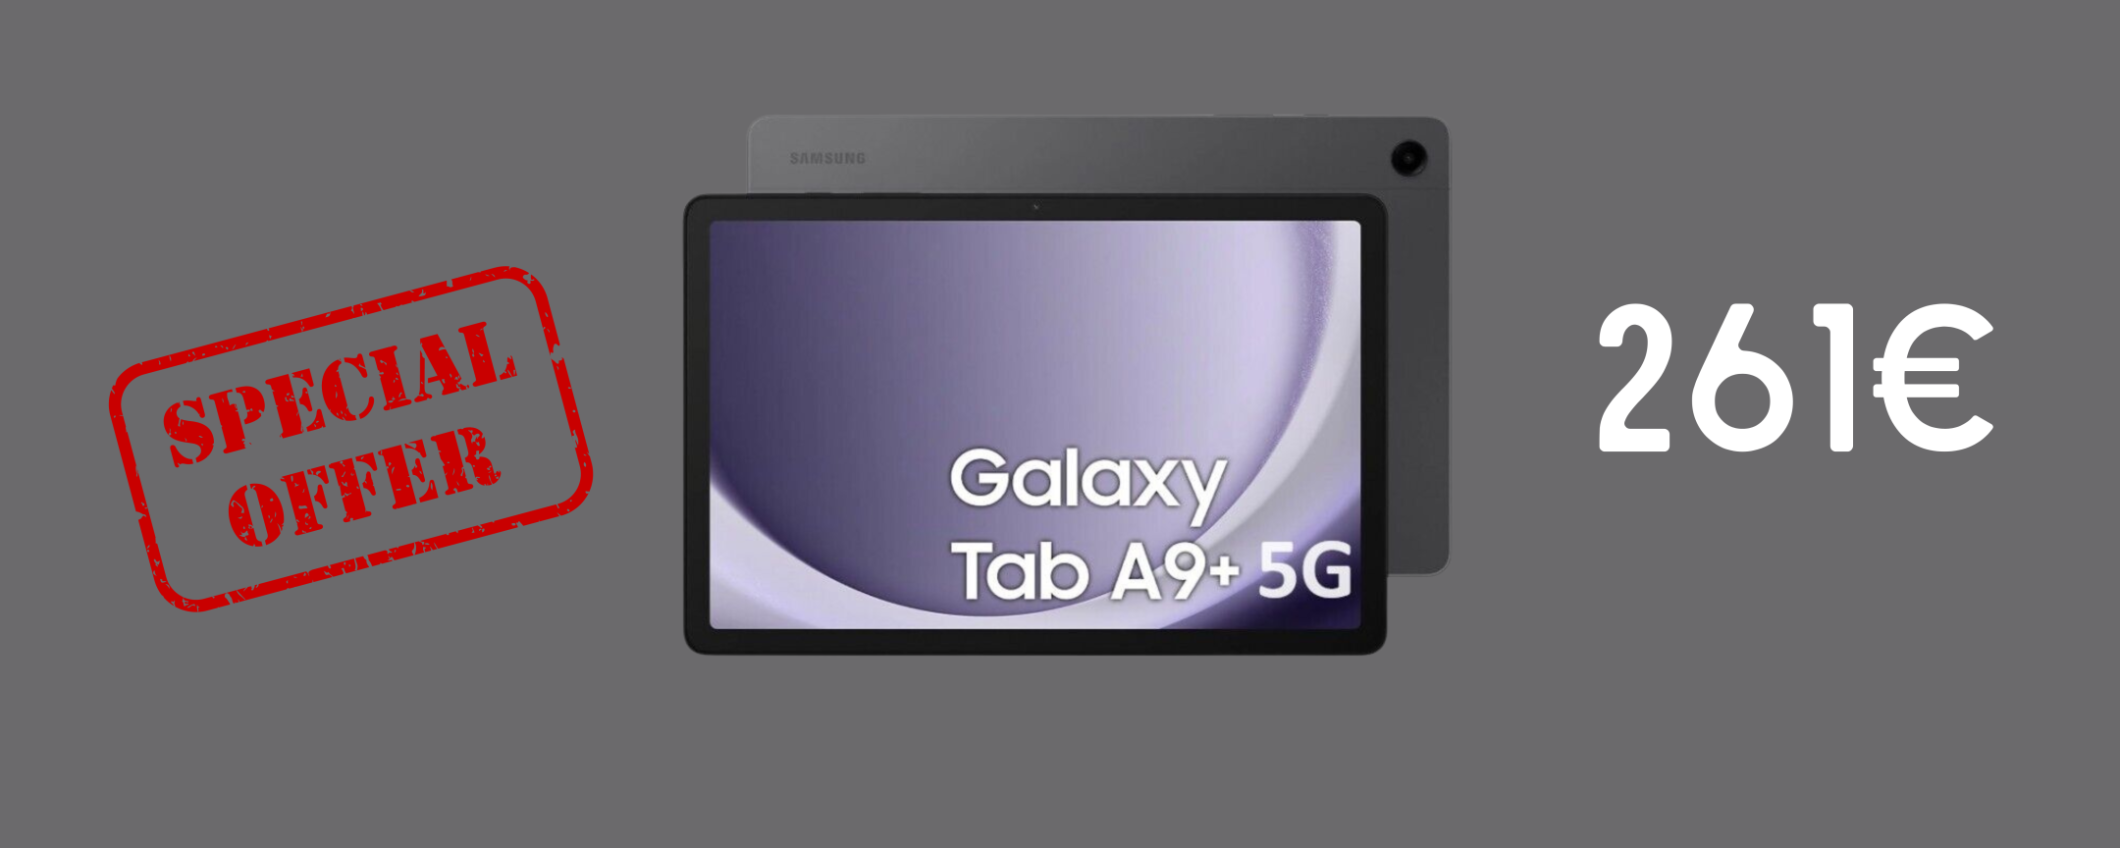 Samsung Galaxy Tab A9+ 5G in sconto su eBay a SOLI 261€.